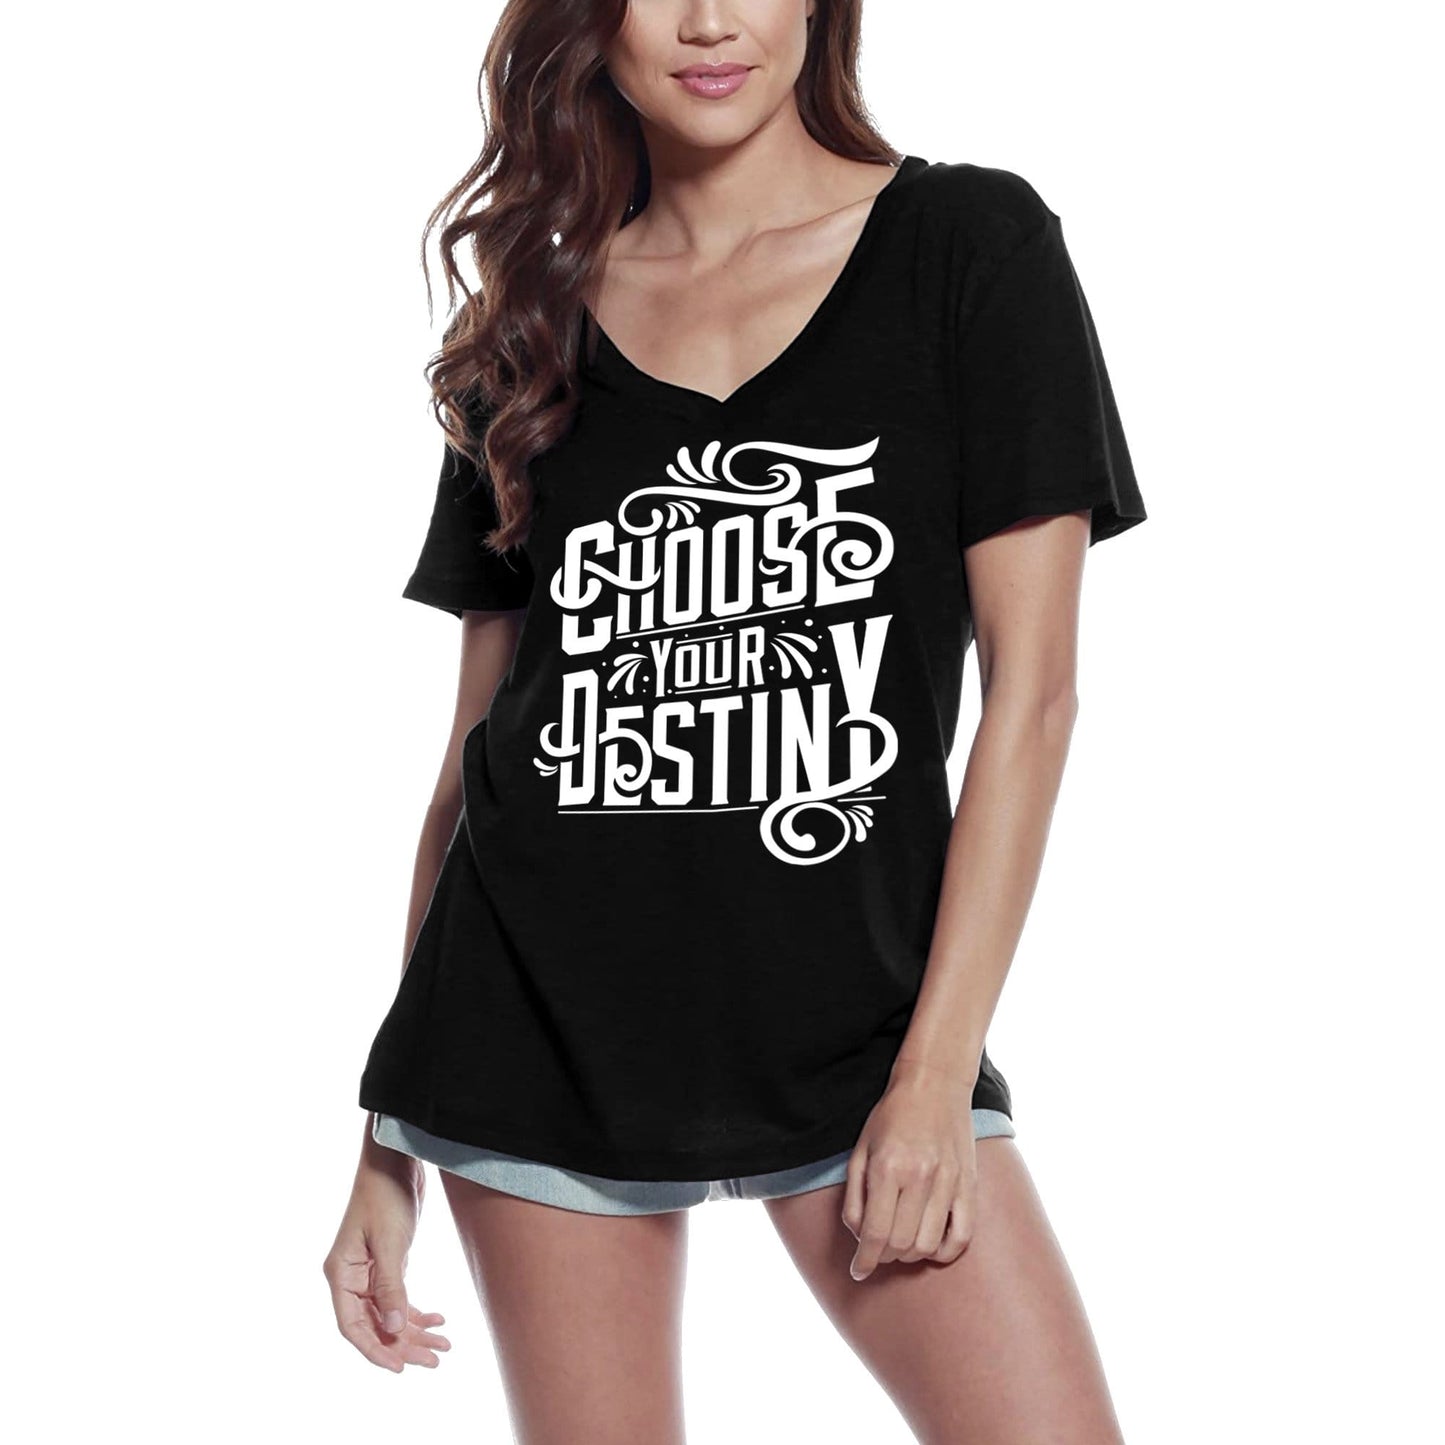 T-shirt ULTRABASIC pour femmes Choisissez votre destin - T-shirt graphique avec slogan de motivation